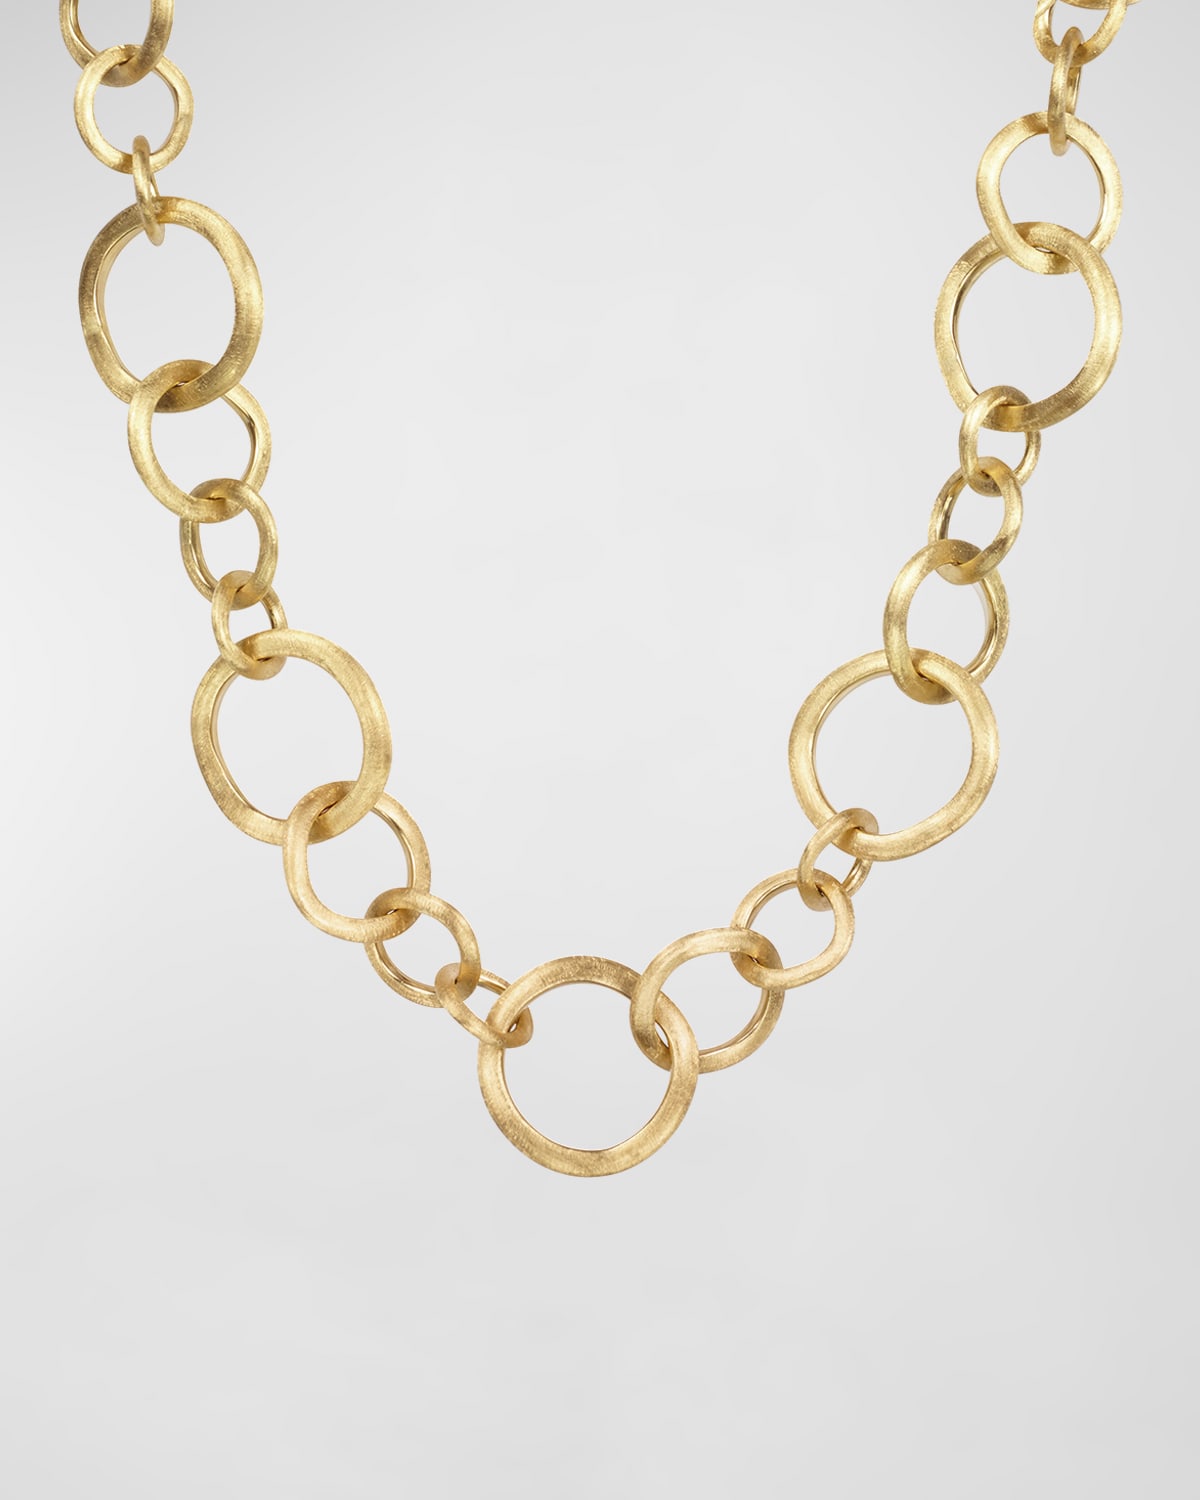 Marco Bicego Jaipur 18k Gold Link Necklace, 19"